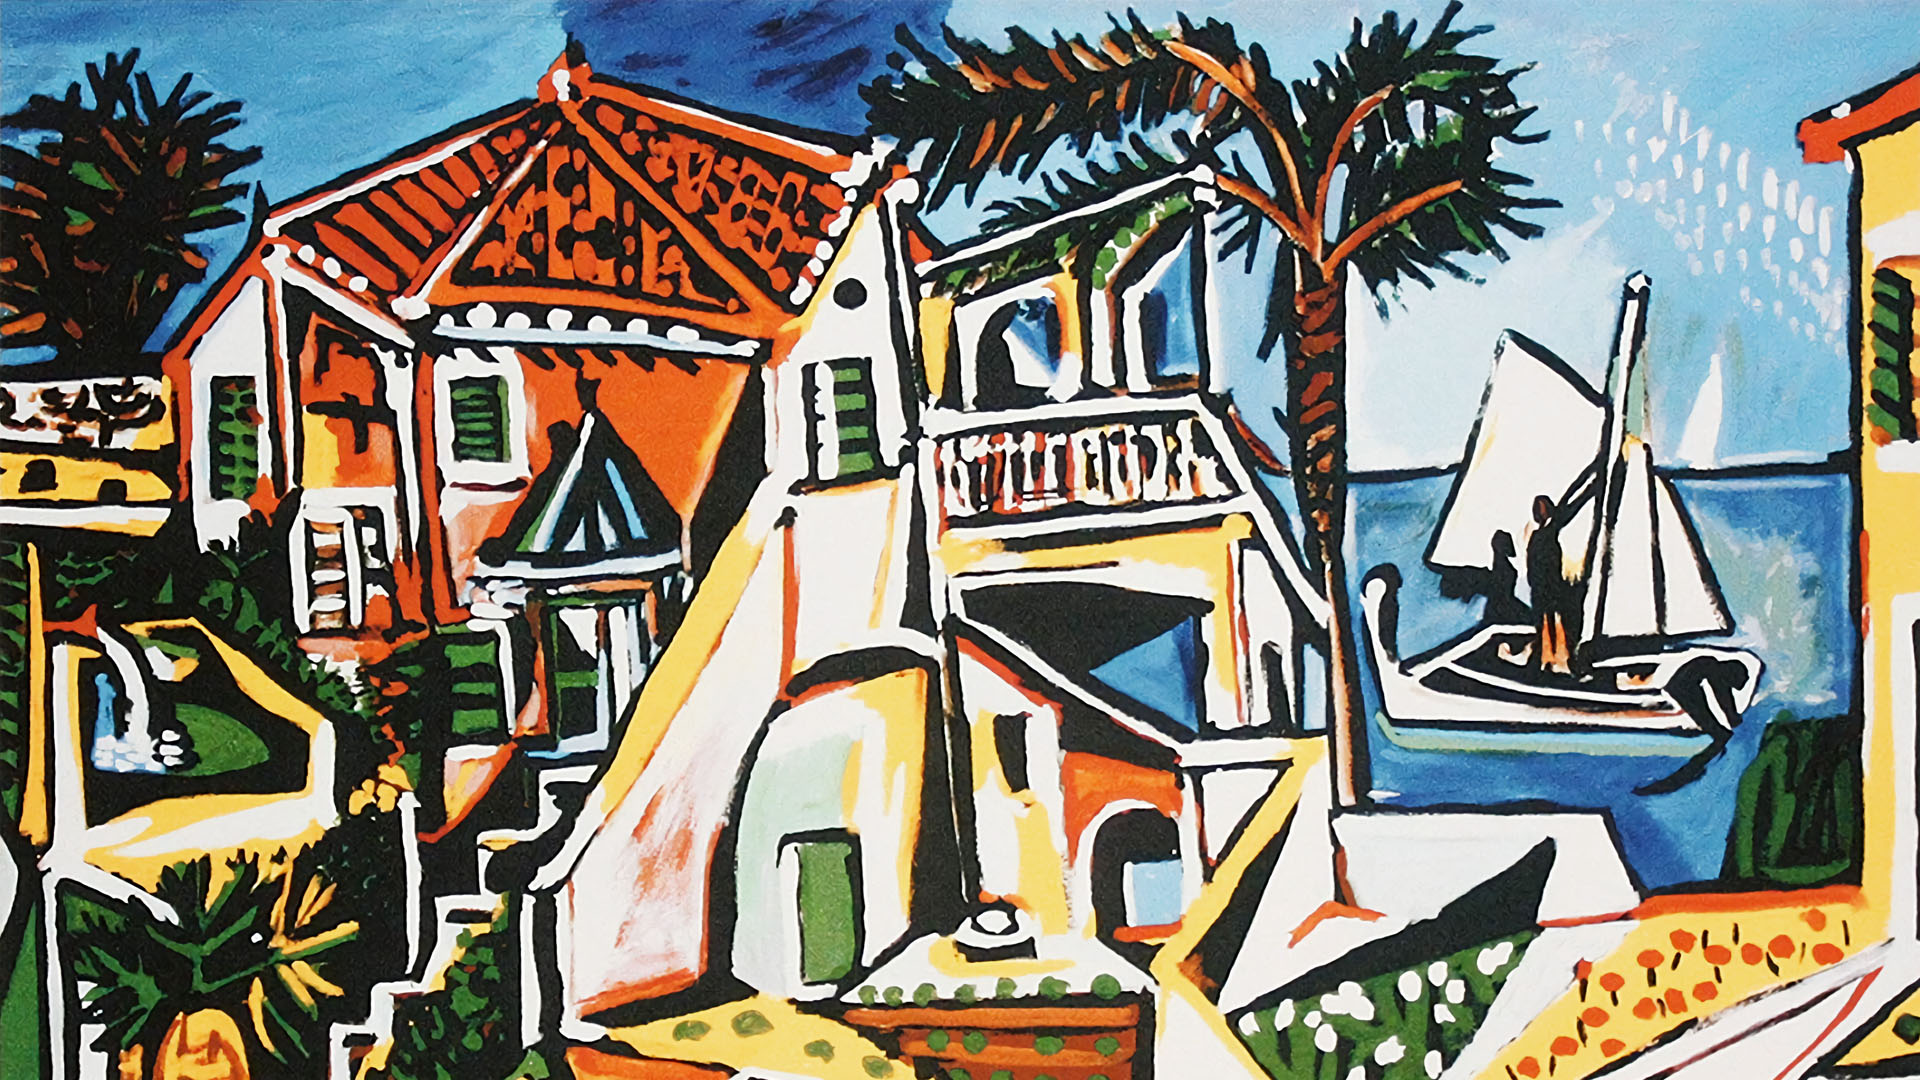 パブロ・ピカソ 地中海の風景 Pablo Picasso - Mediterranean Landscape 1920x1080